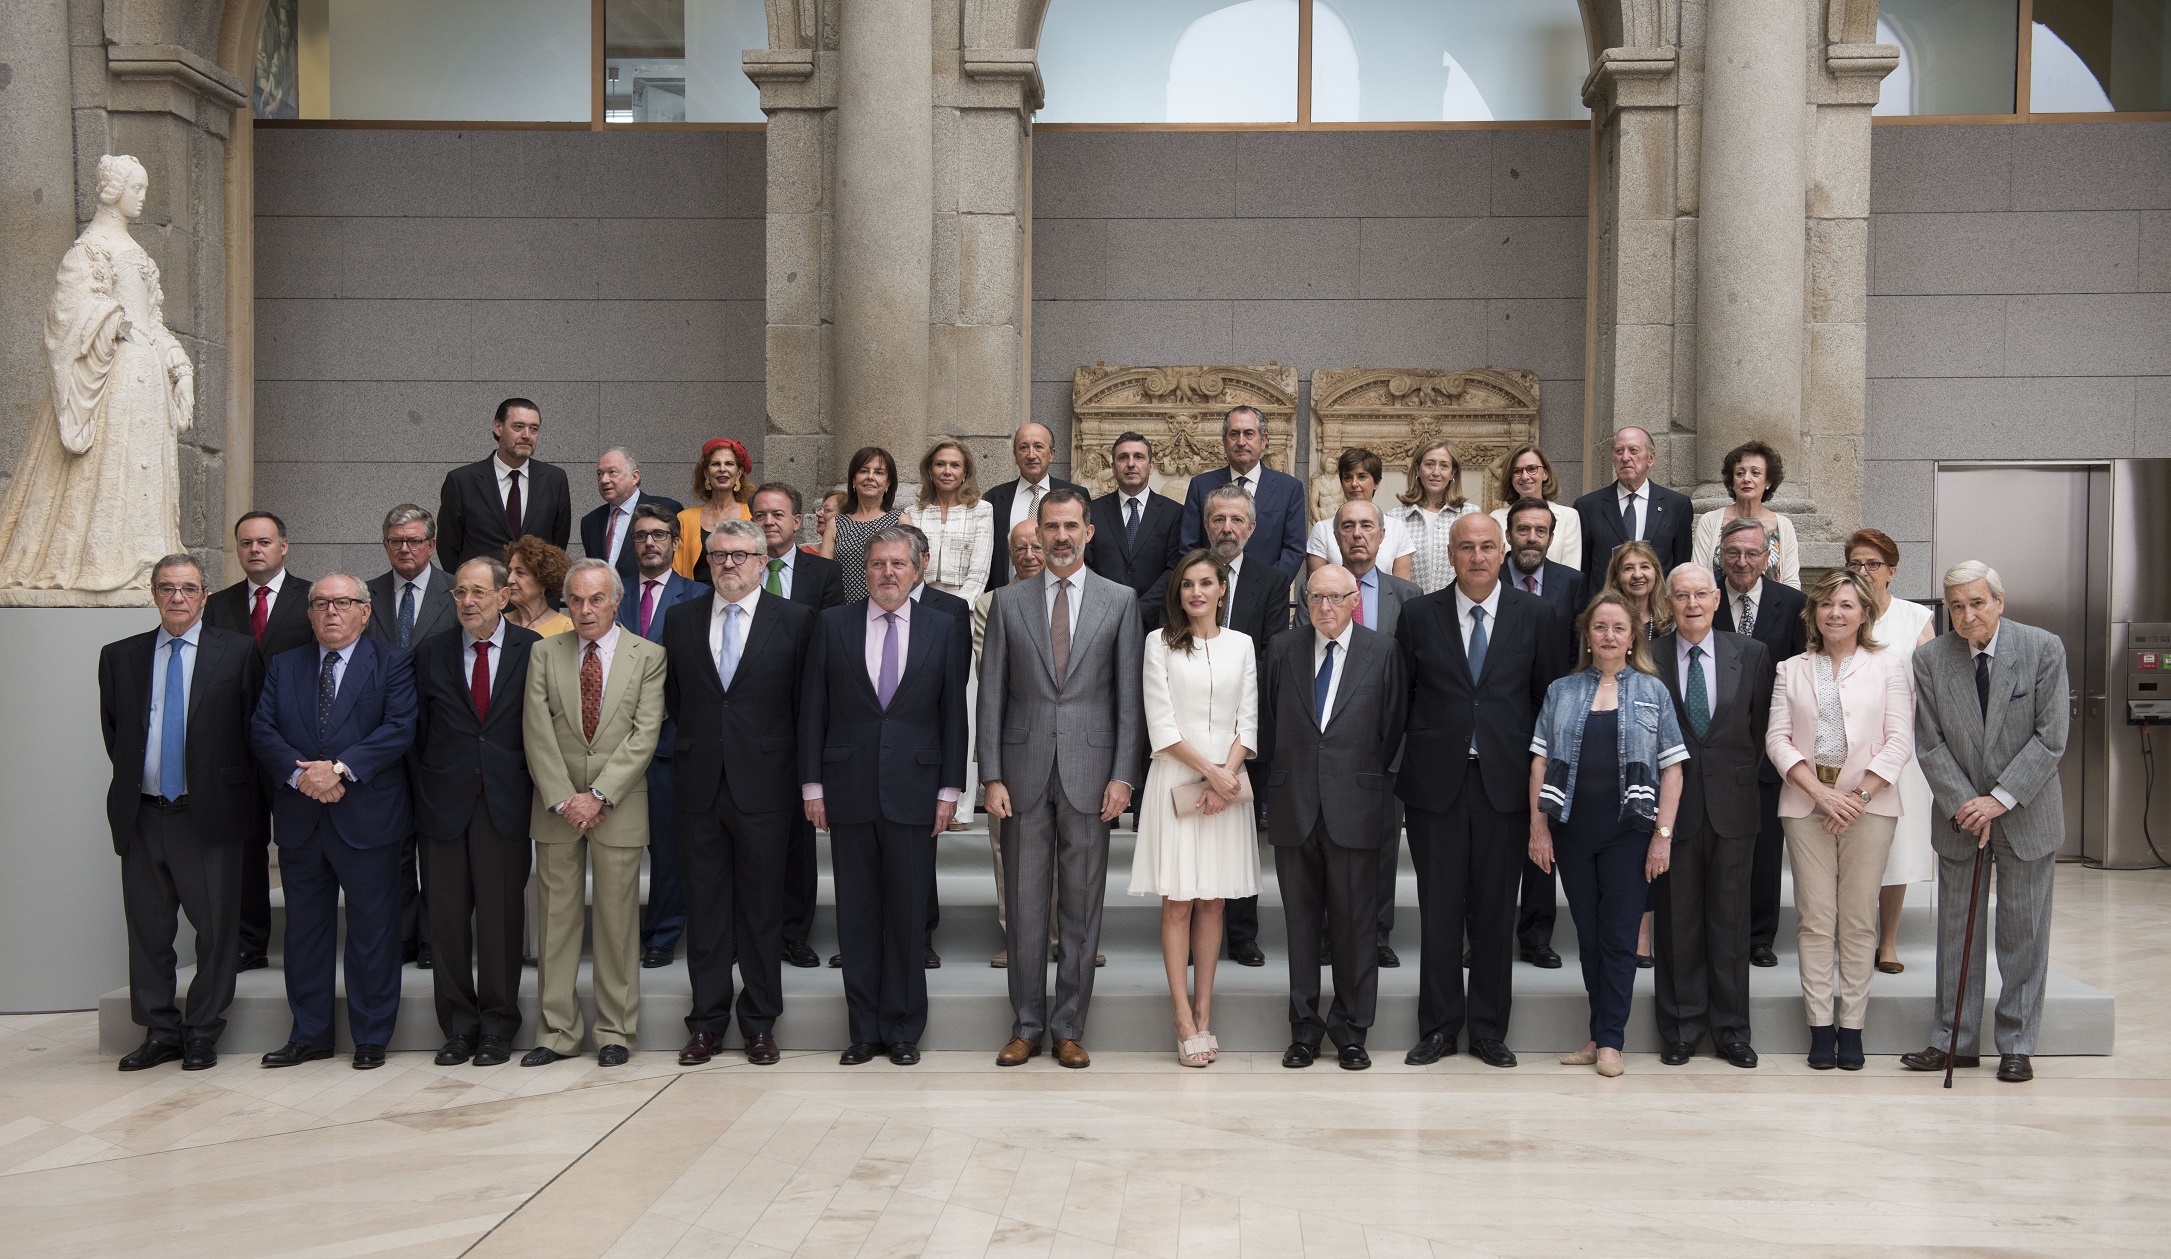 SSMM los Reyes de España junto al Pleno de la Comisión Nacional para la conmemoración del II Centenario del Museo Nacional del Prado, de la que son Presidentes de Honor. Foto: © Museo Nacional del Prado.